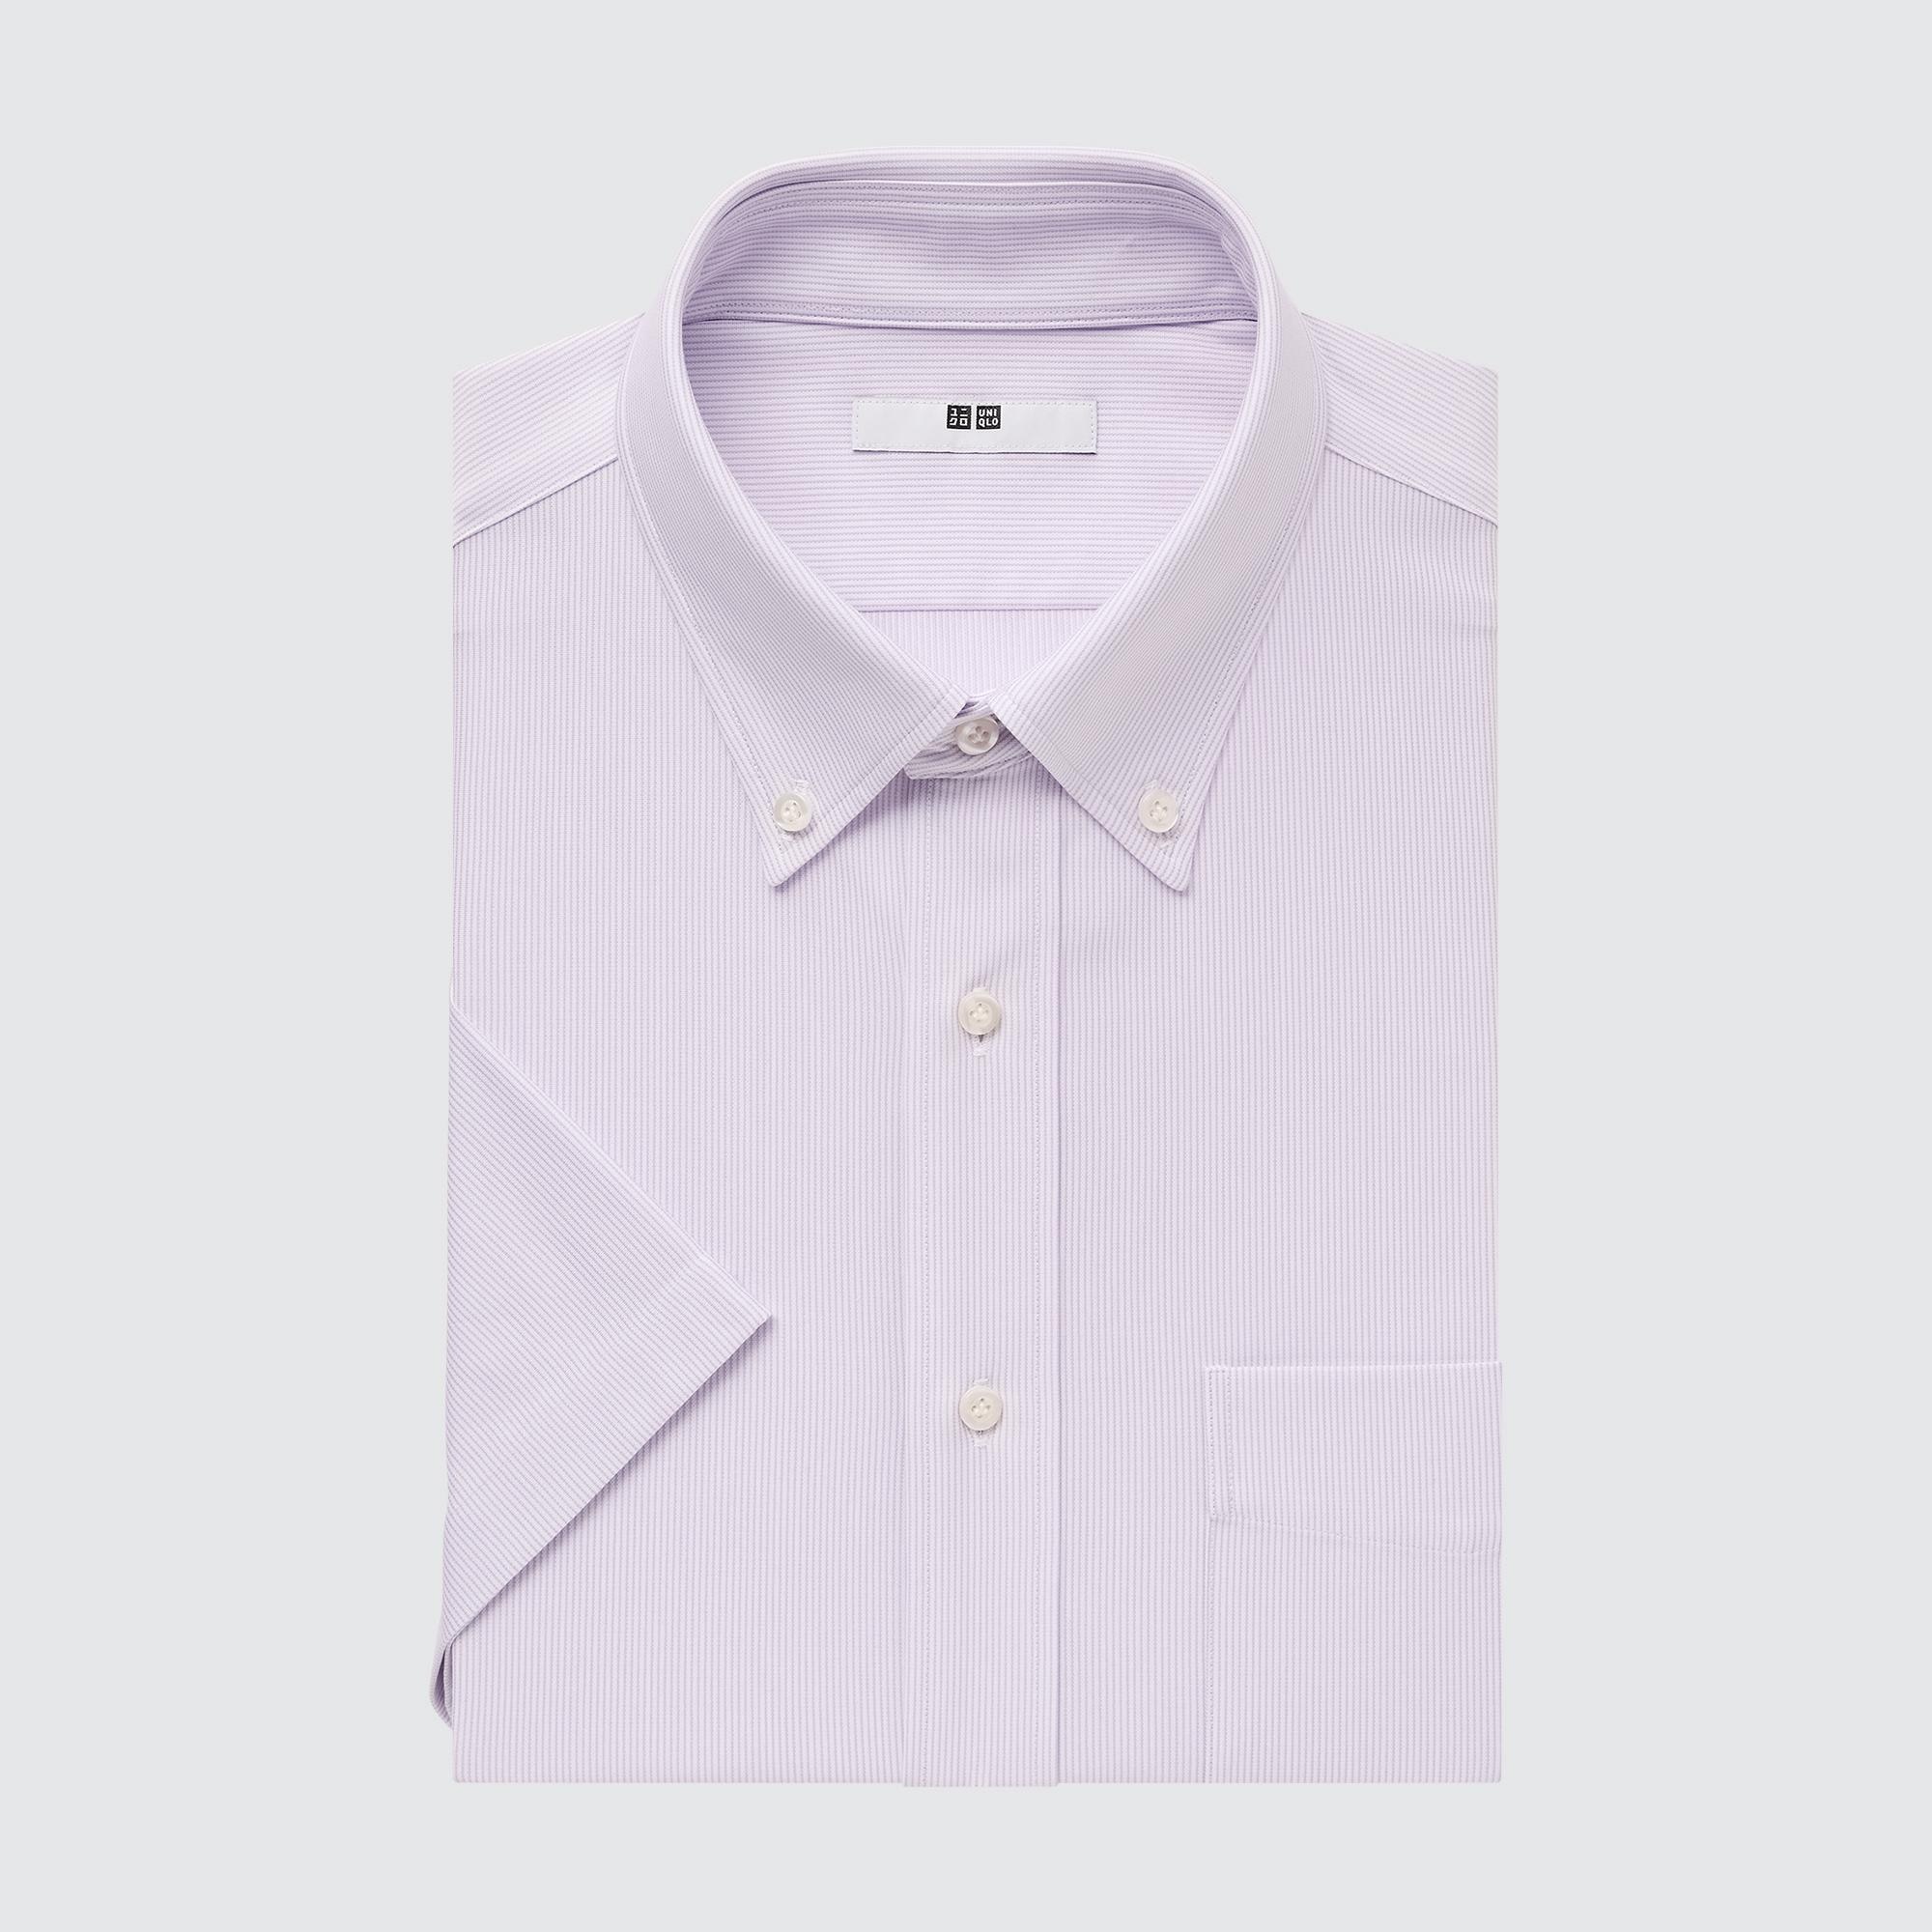 ノンアイロンシャツ 半袖の関連商品 | ユニクロ